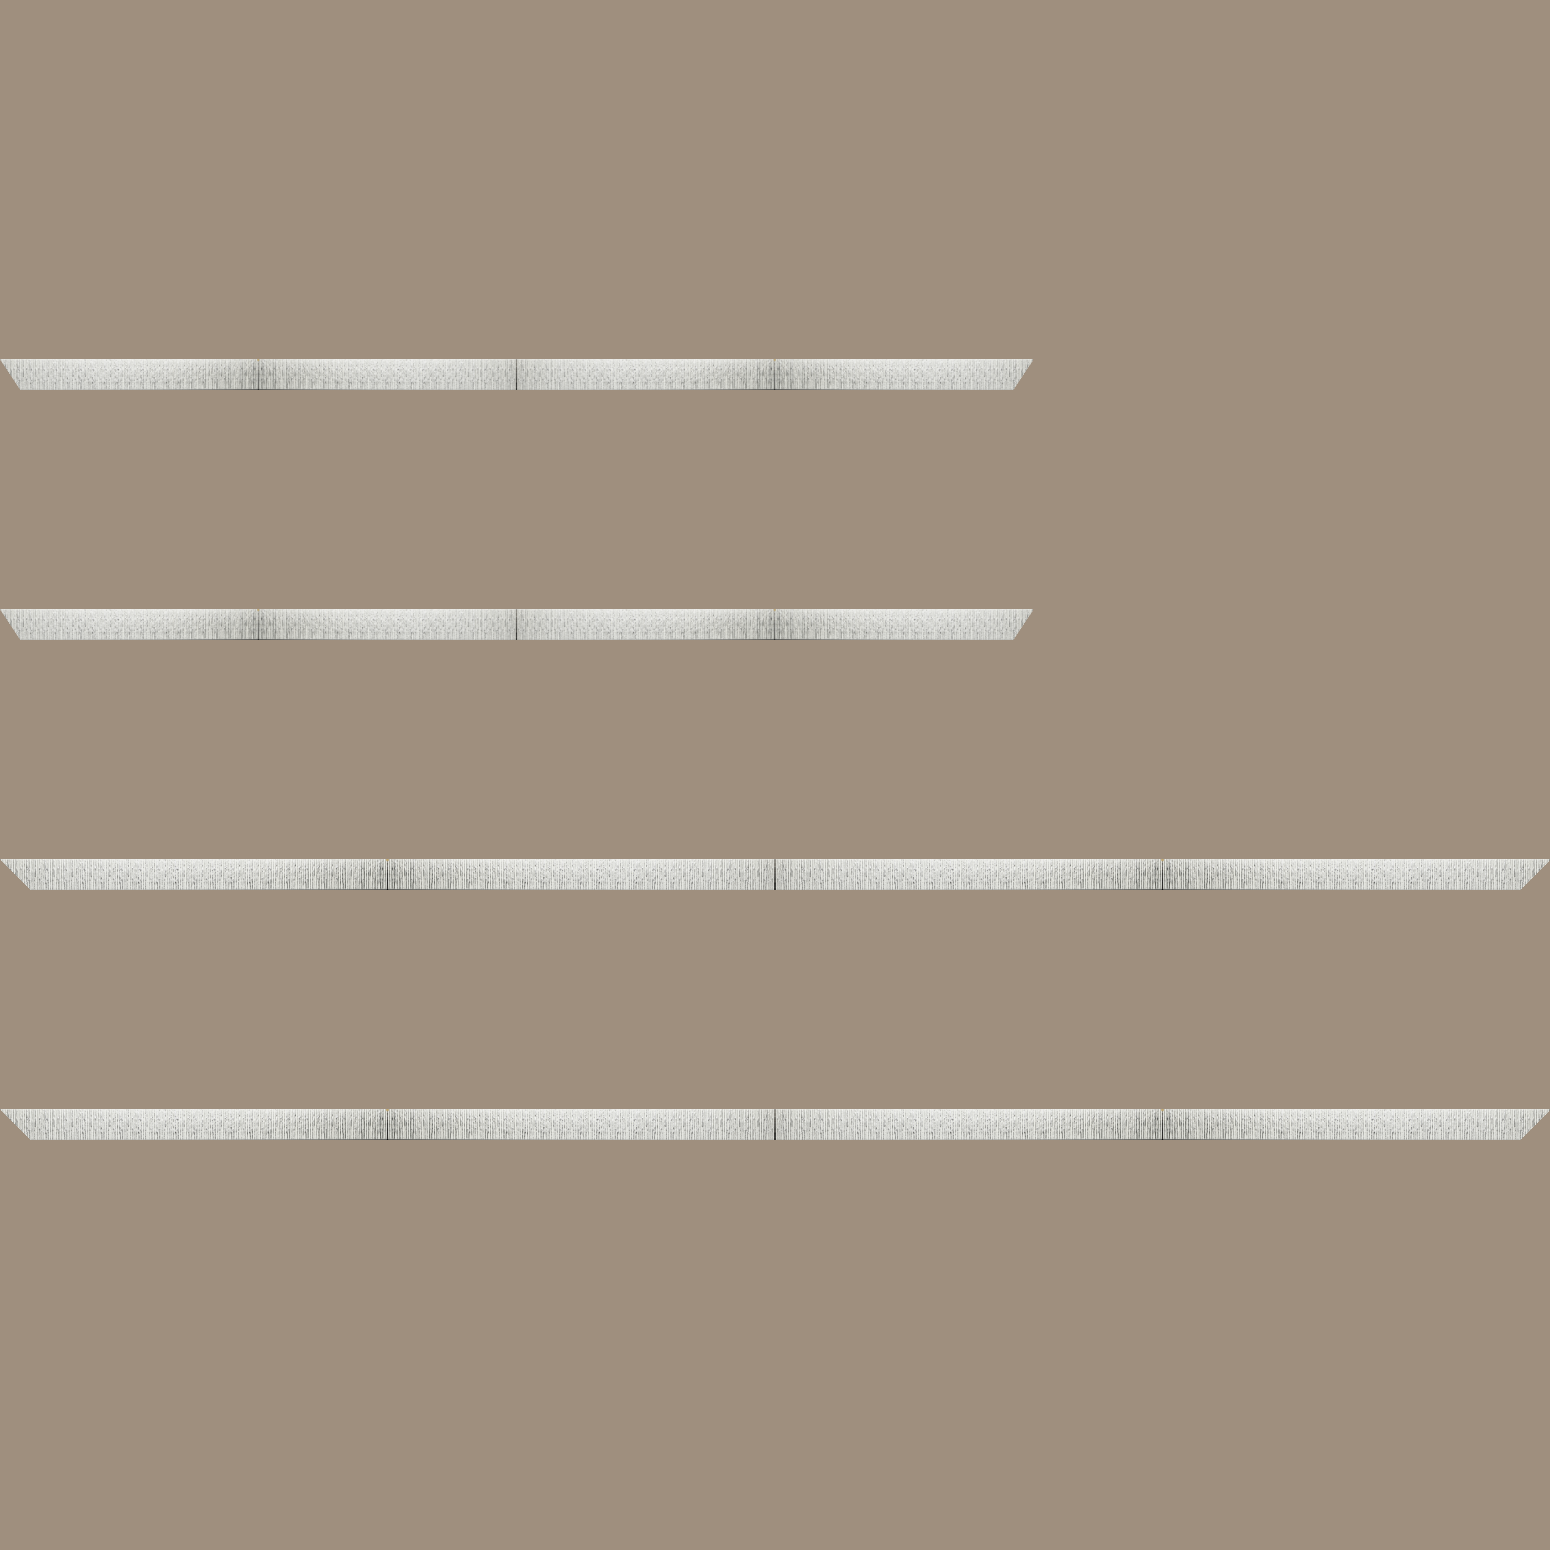 Baguette bois profil plat largeur 10.5cm couleur blanc mat strié argent chromé en relief